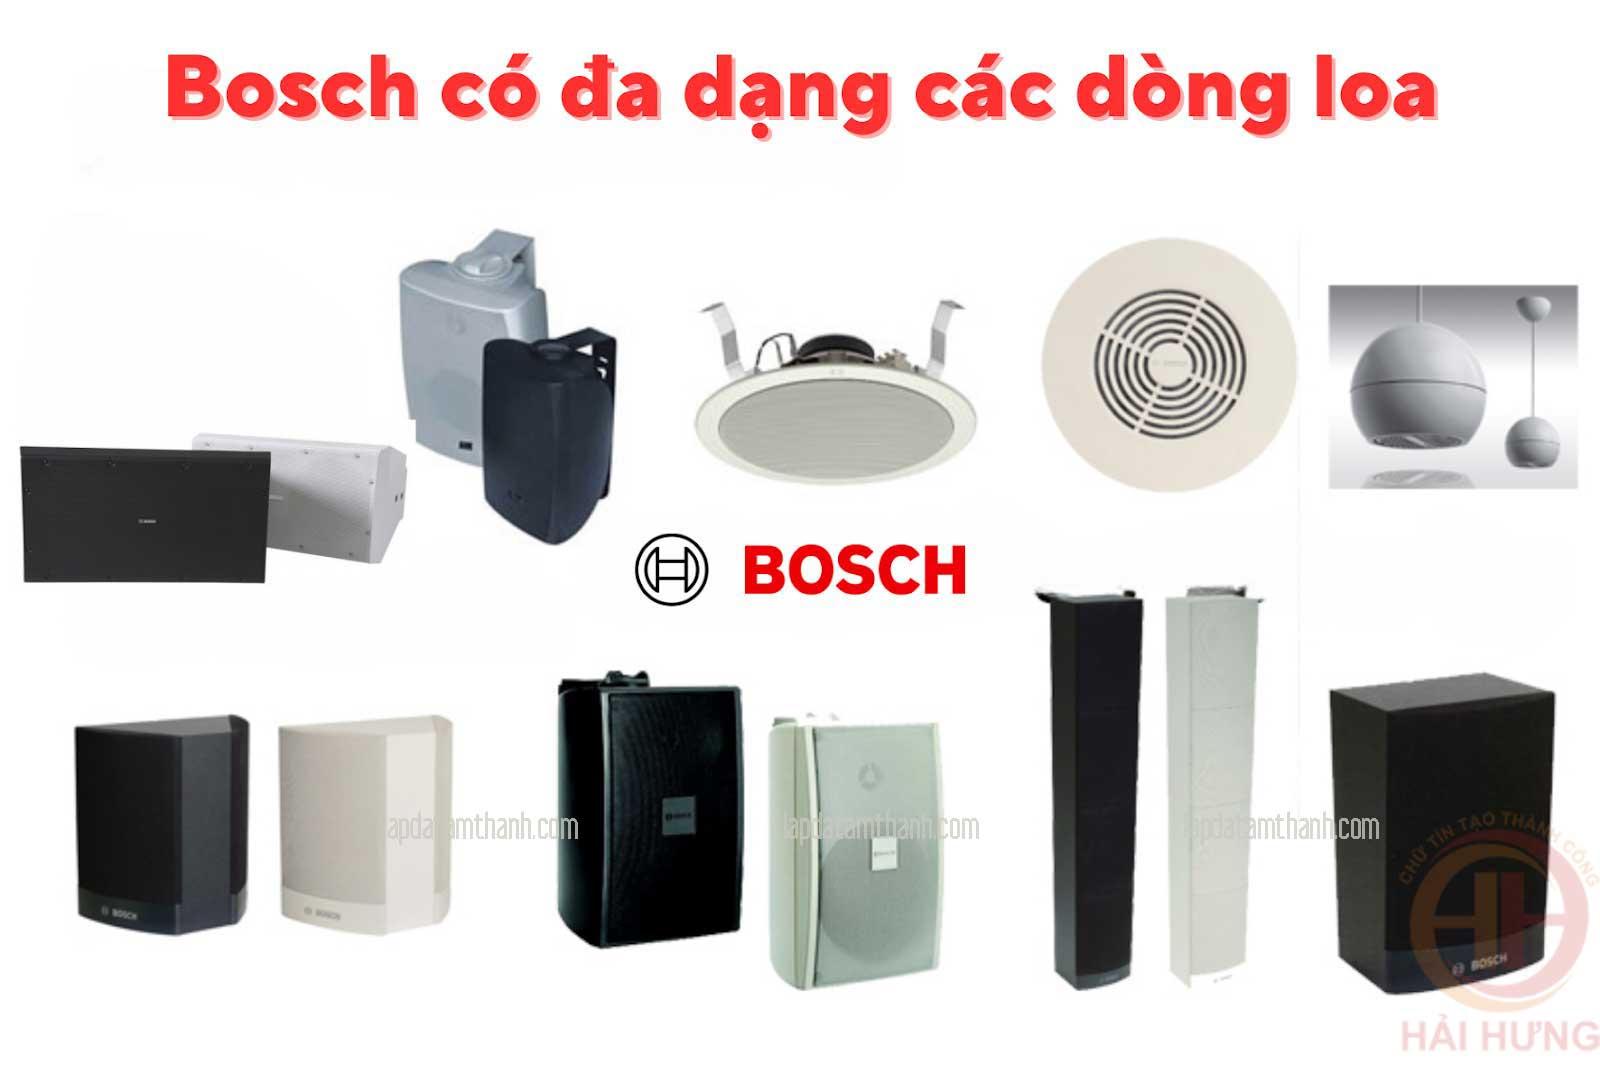 Bosch có đa dạng các dòng loa